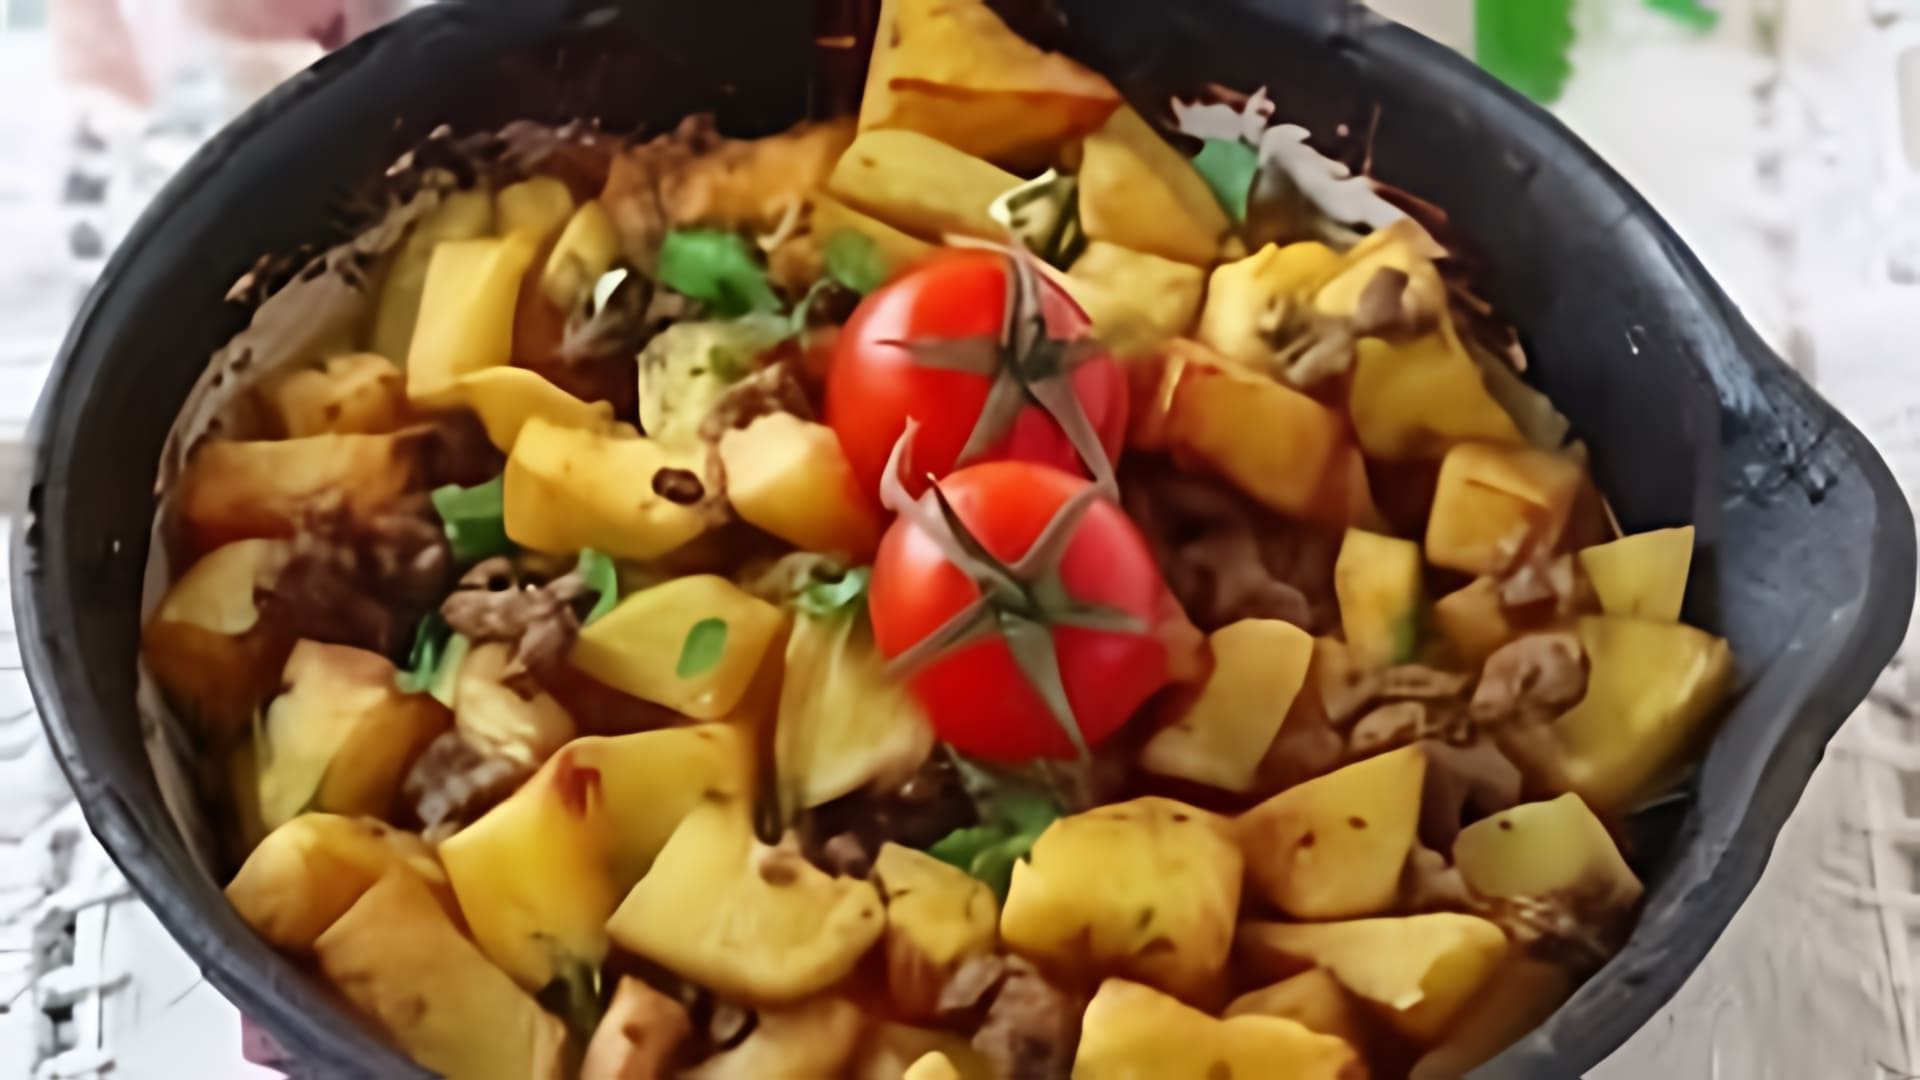 В этом видео демонстрируется простой и быстрый рецепт приготовления картошки с фаршем по-турецки